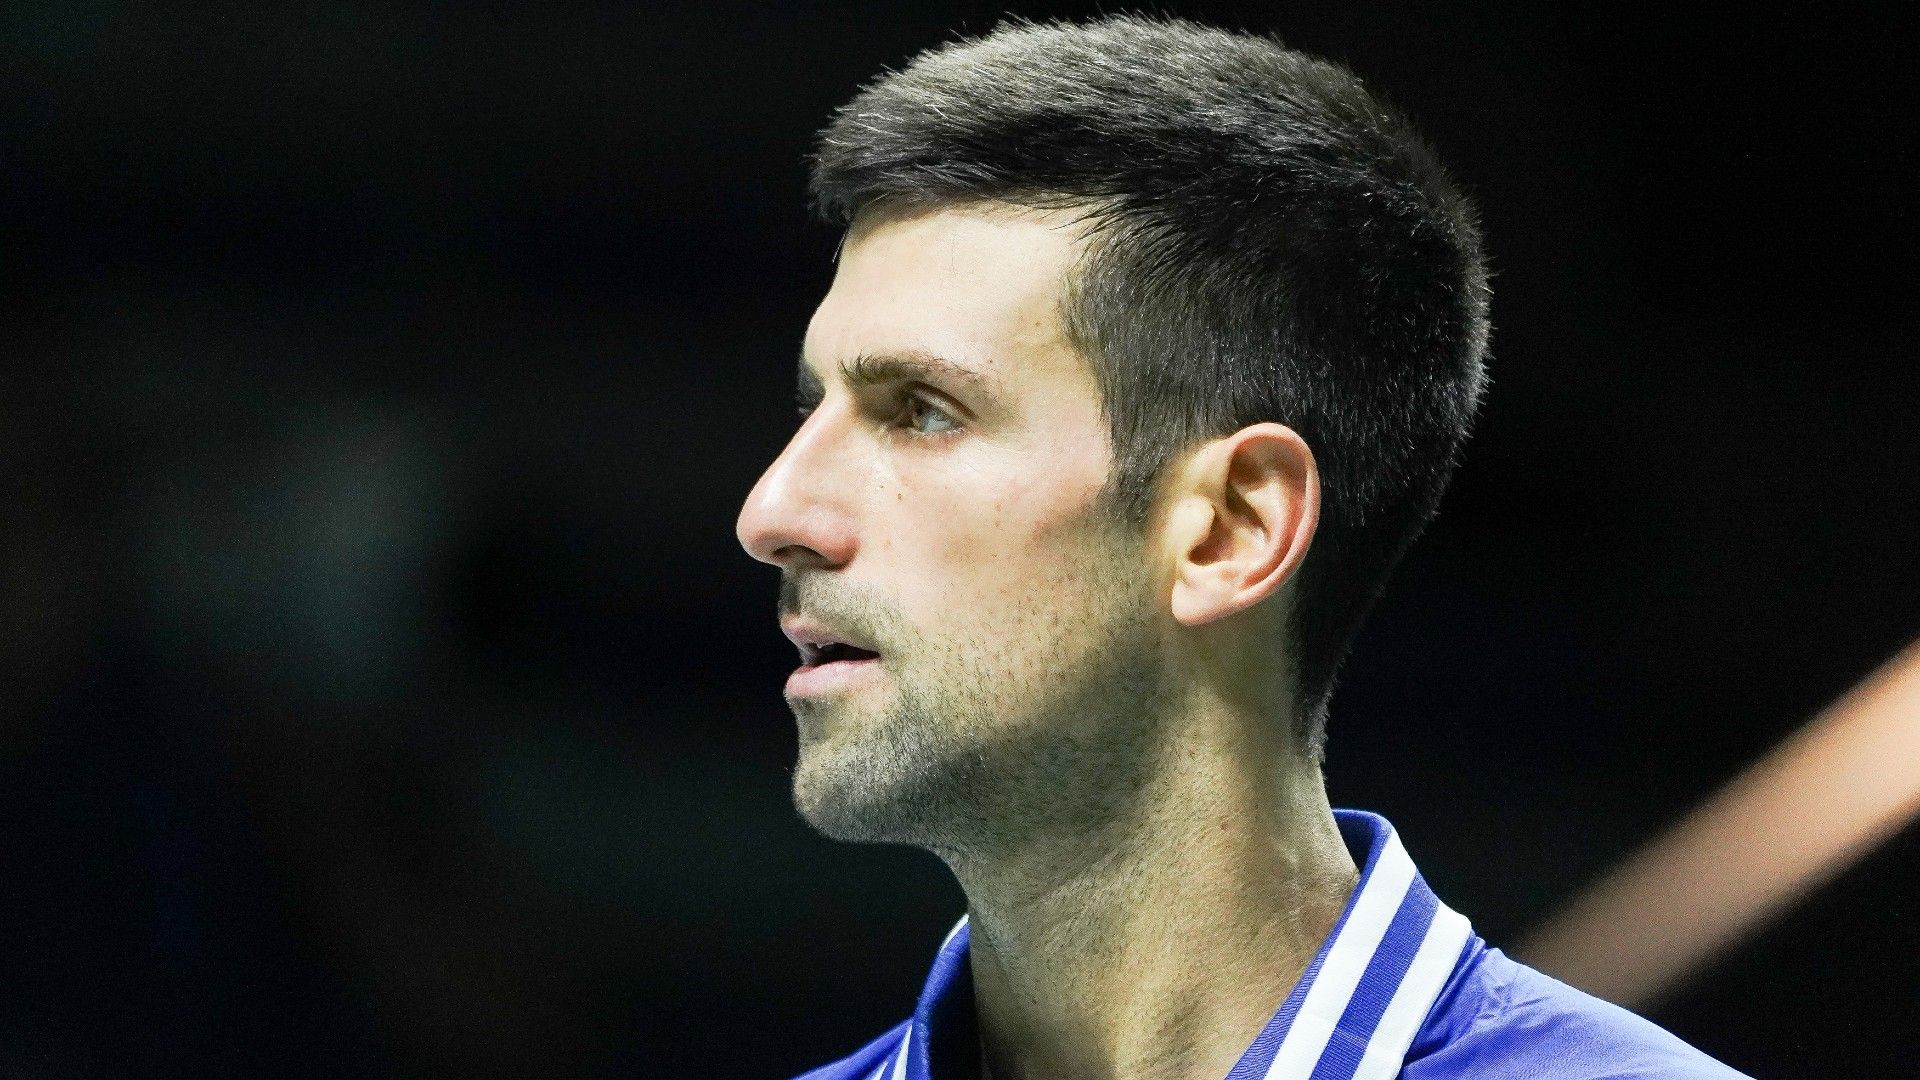 LIVE: Djokovic's last hope for Australian Open